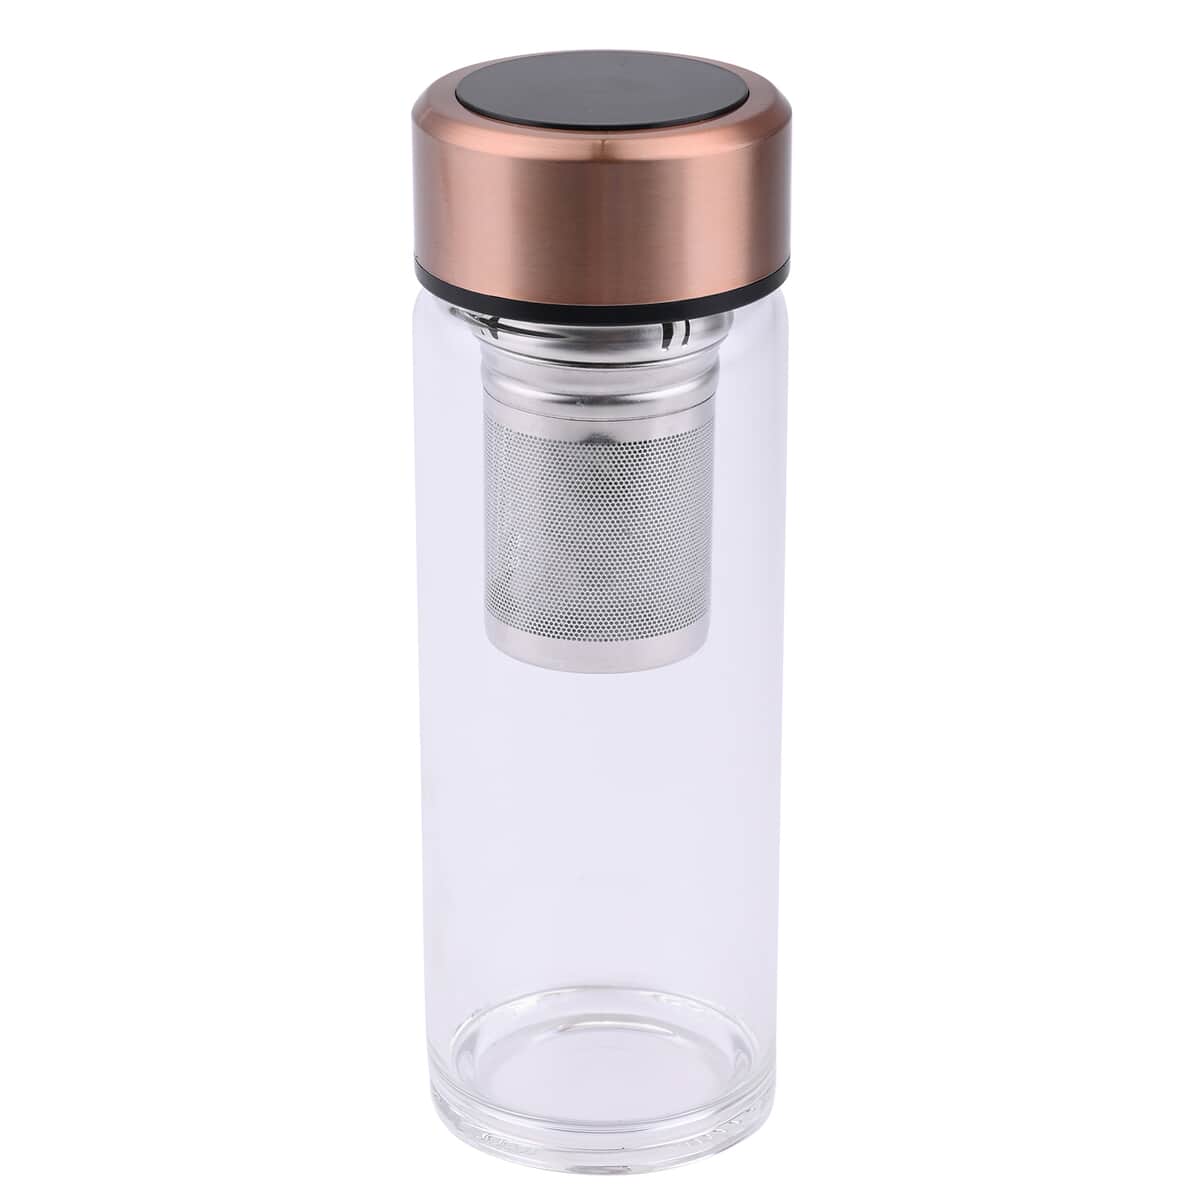 Elite Shungite Filter Infuser and Temperature Sensor Smart Water Bottle (LED Display, Long Filter) - Rose Gold image number 0